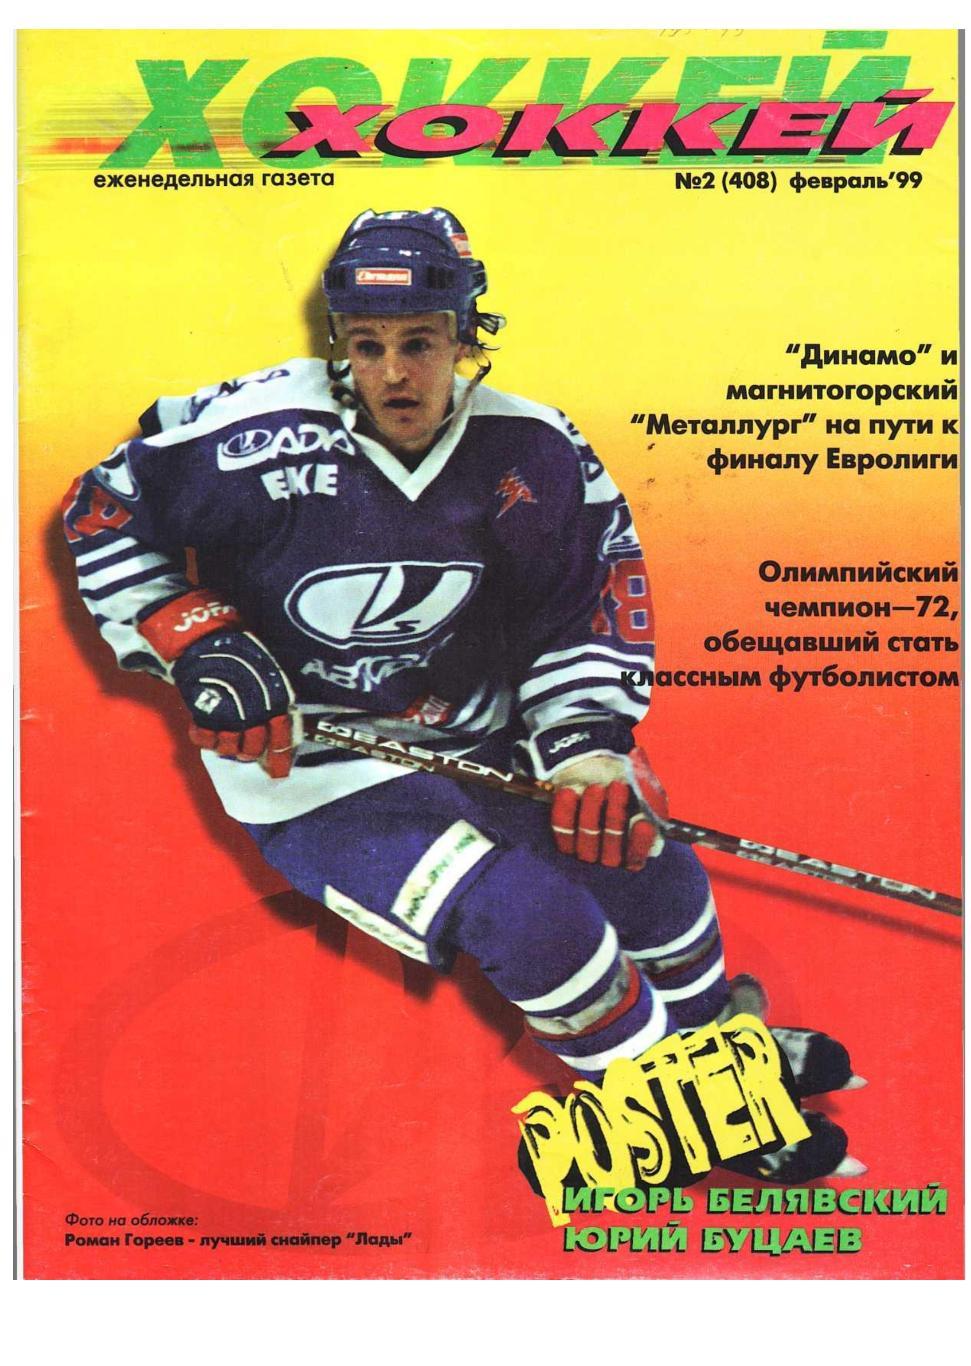 Хоккей. 1999, № 2, февраль. – 18 с. Постер Юрий Буцаев, Игорь Белявский.